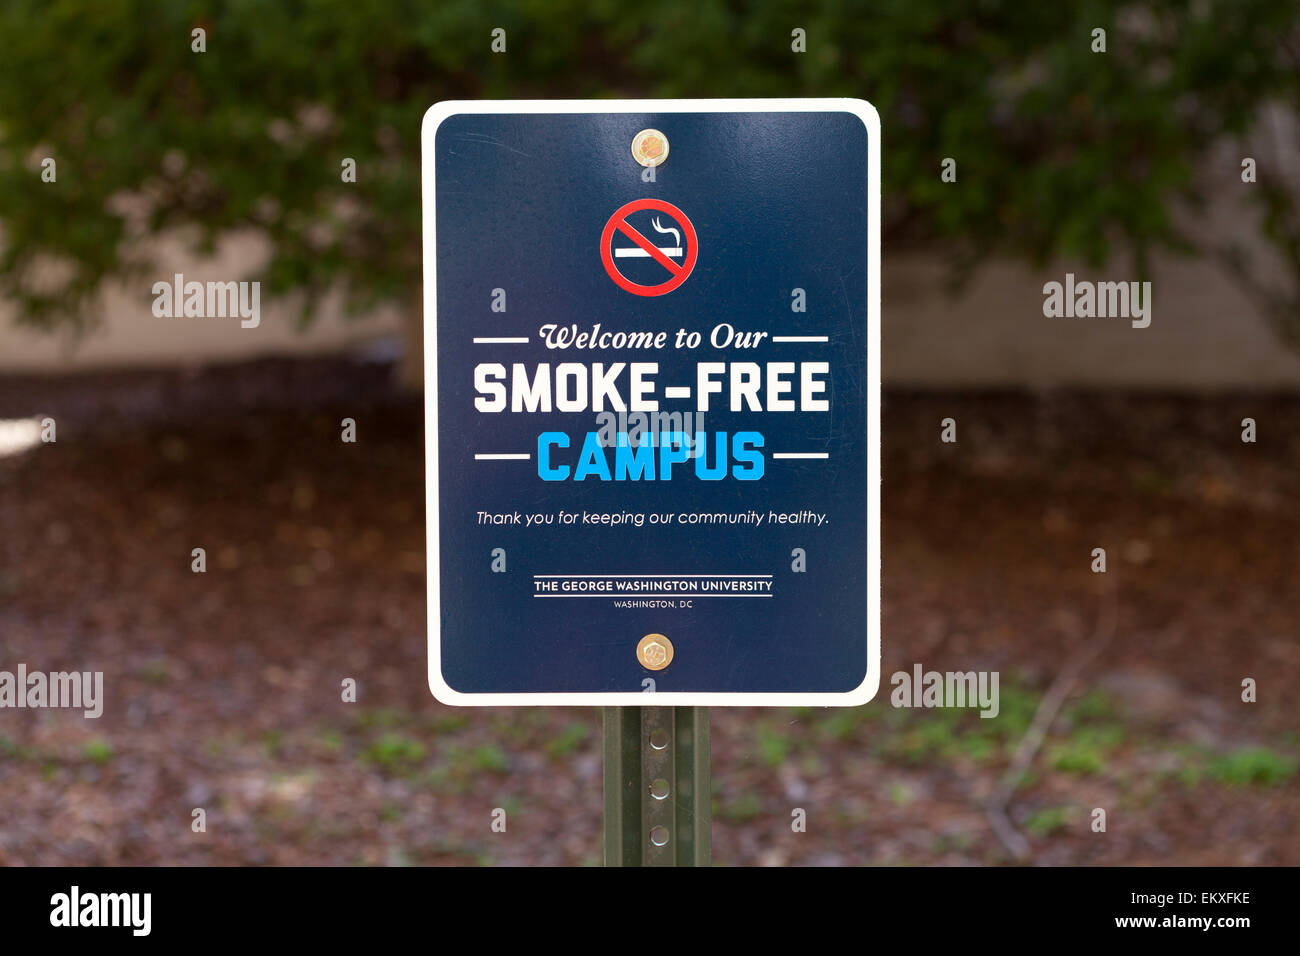 Smoke-free campus sign, George Washington University - Washington, DC USA Stock Photo